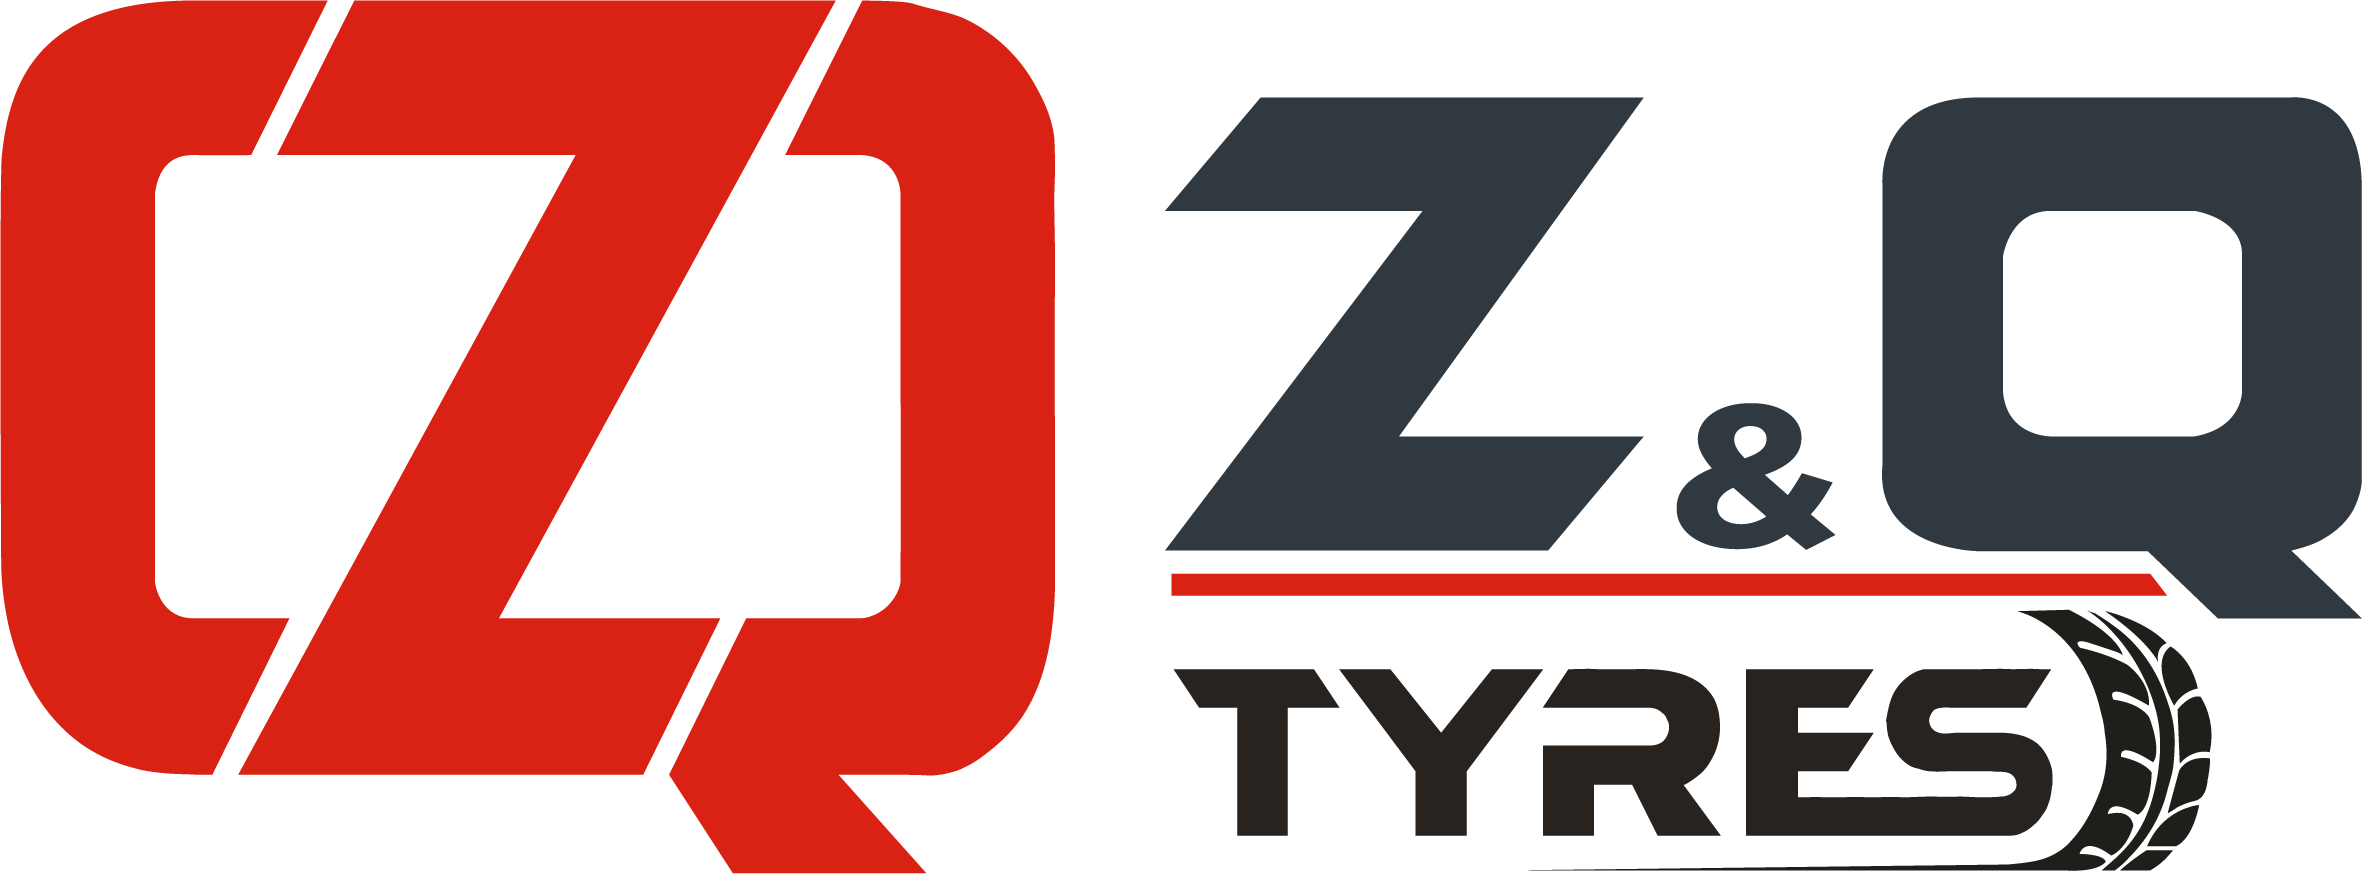 ZQ TYRES | ZQ MONTANA Zirai Lastik Üreticisi | ZQ WARRIOR Forklift Dolgu Lastiği Üreticisi | ZQ WOLF Sıcak ve Soğuk Kaplama | ATIRE & MAXAM Türkiye Distribütörü Forklift ve İş Makinesi Lastikleri 